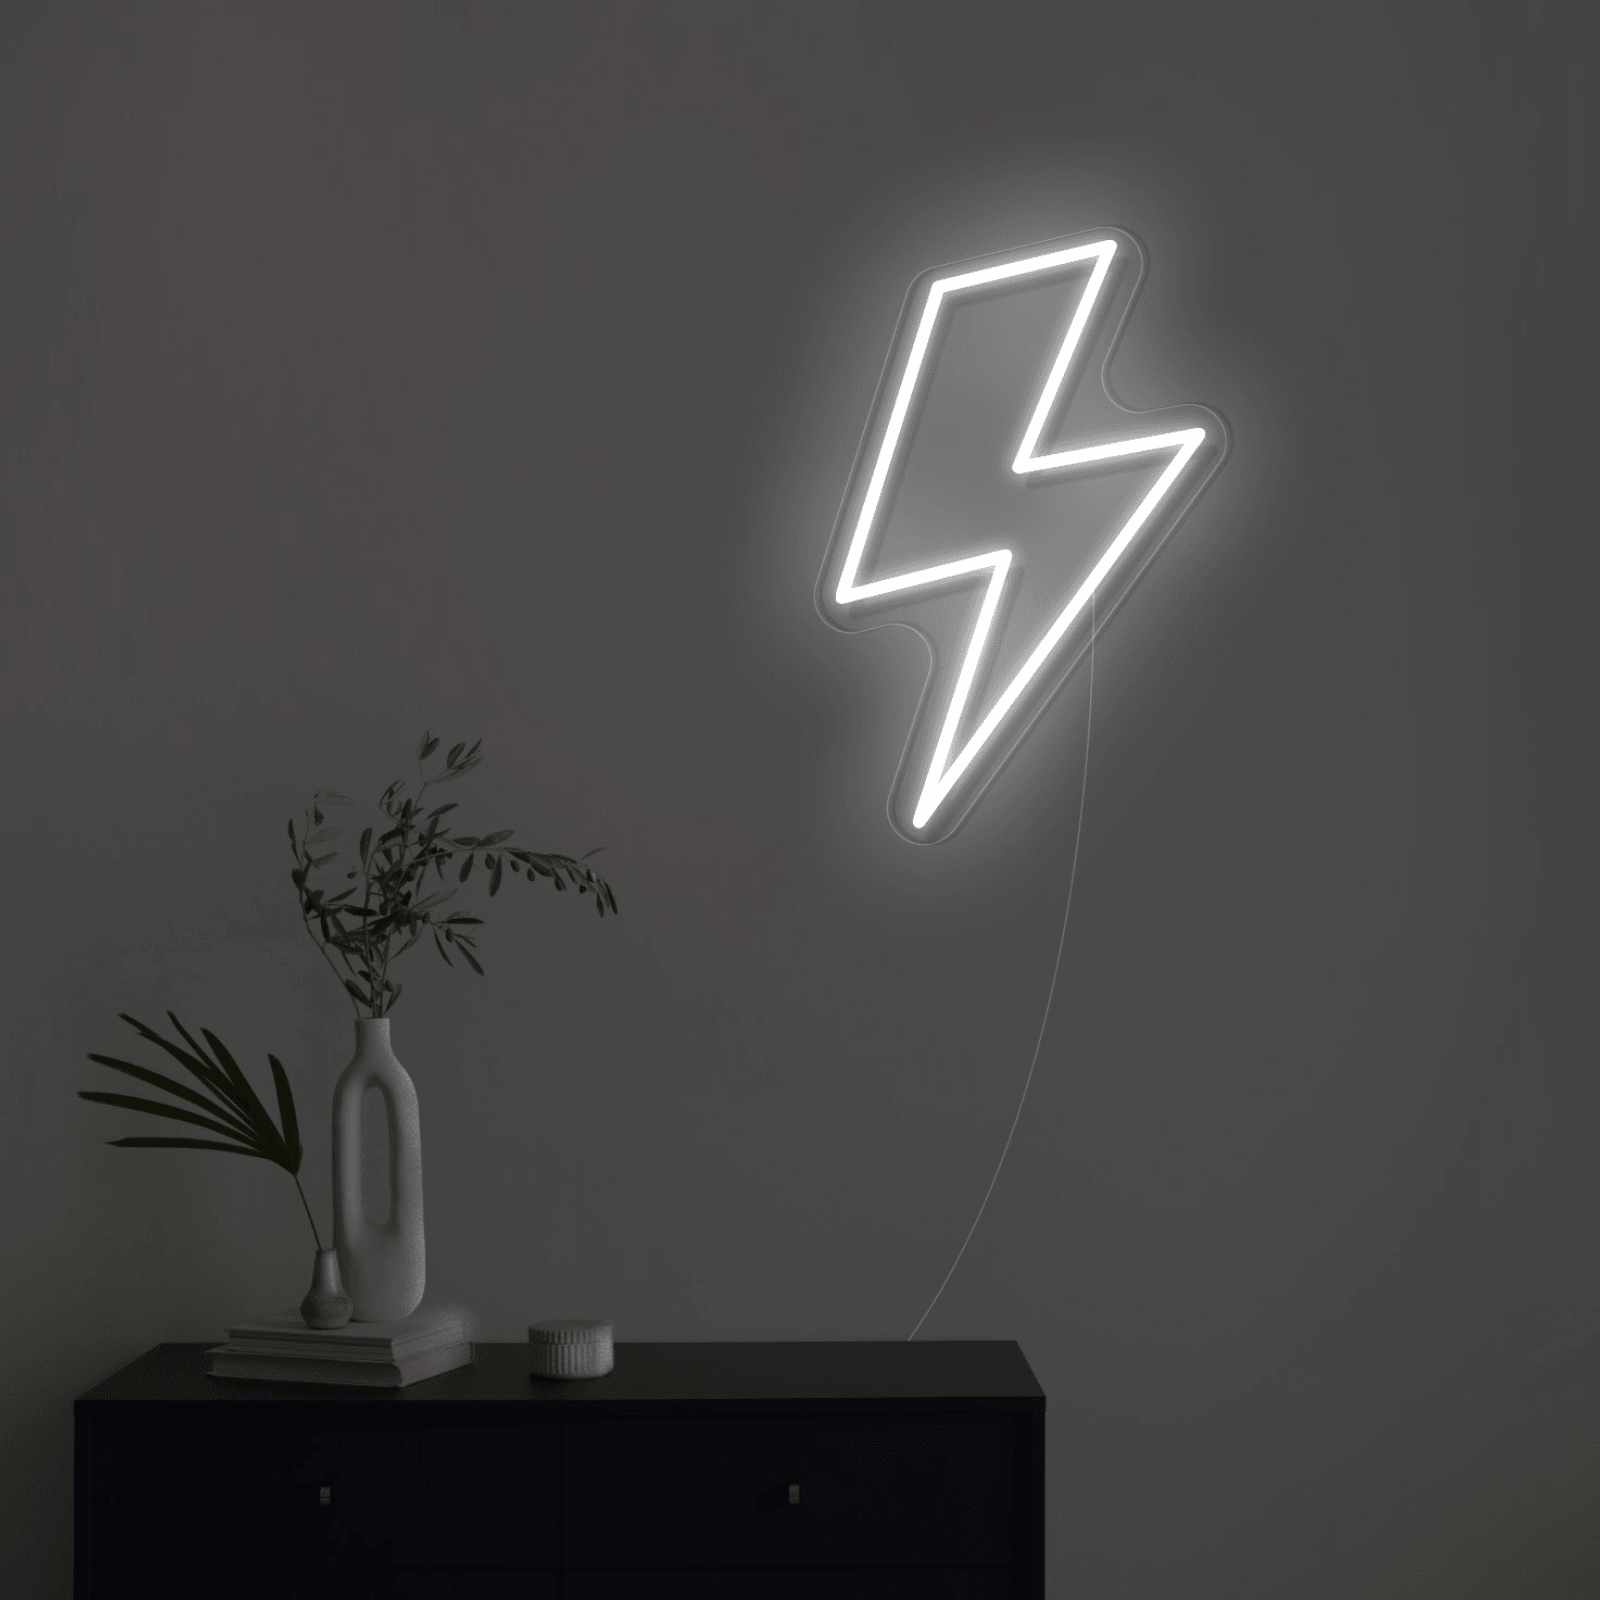 Éclair - Néon LED - Mon Joli Neon